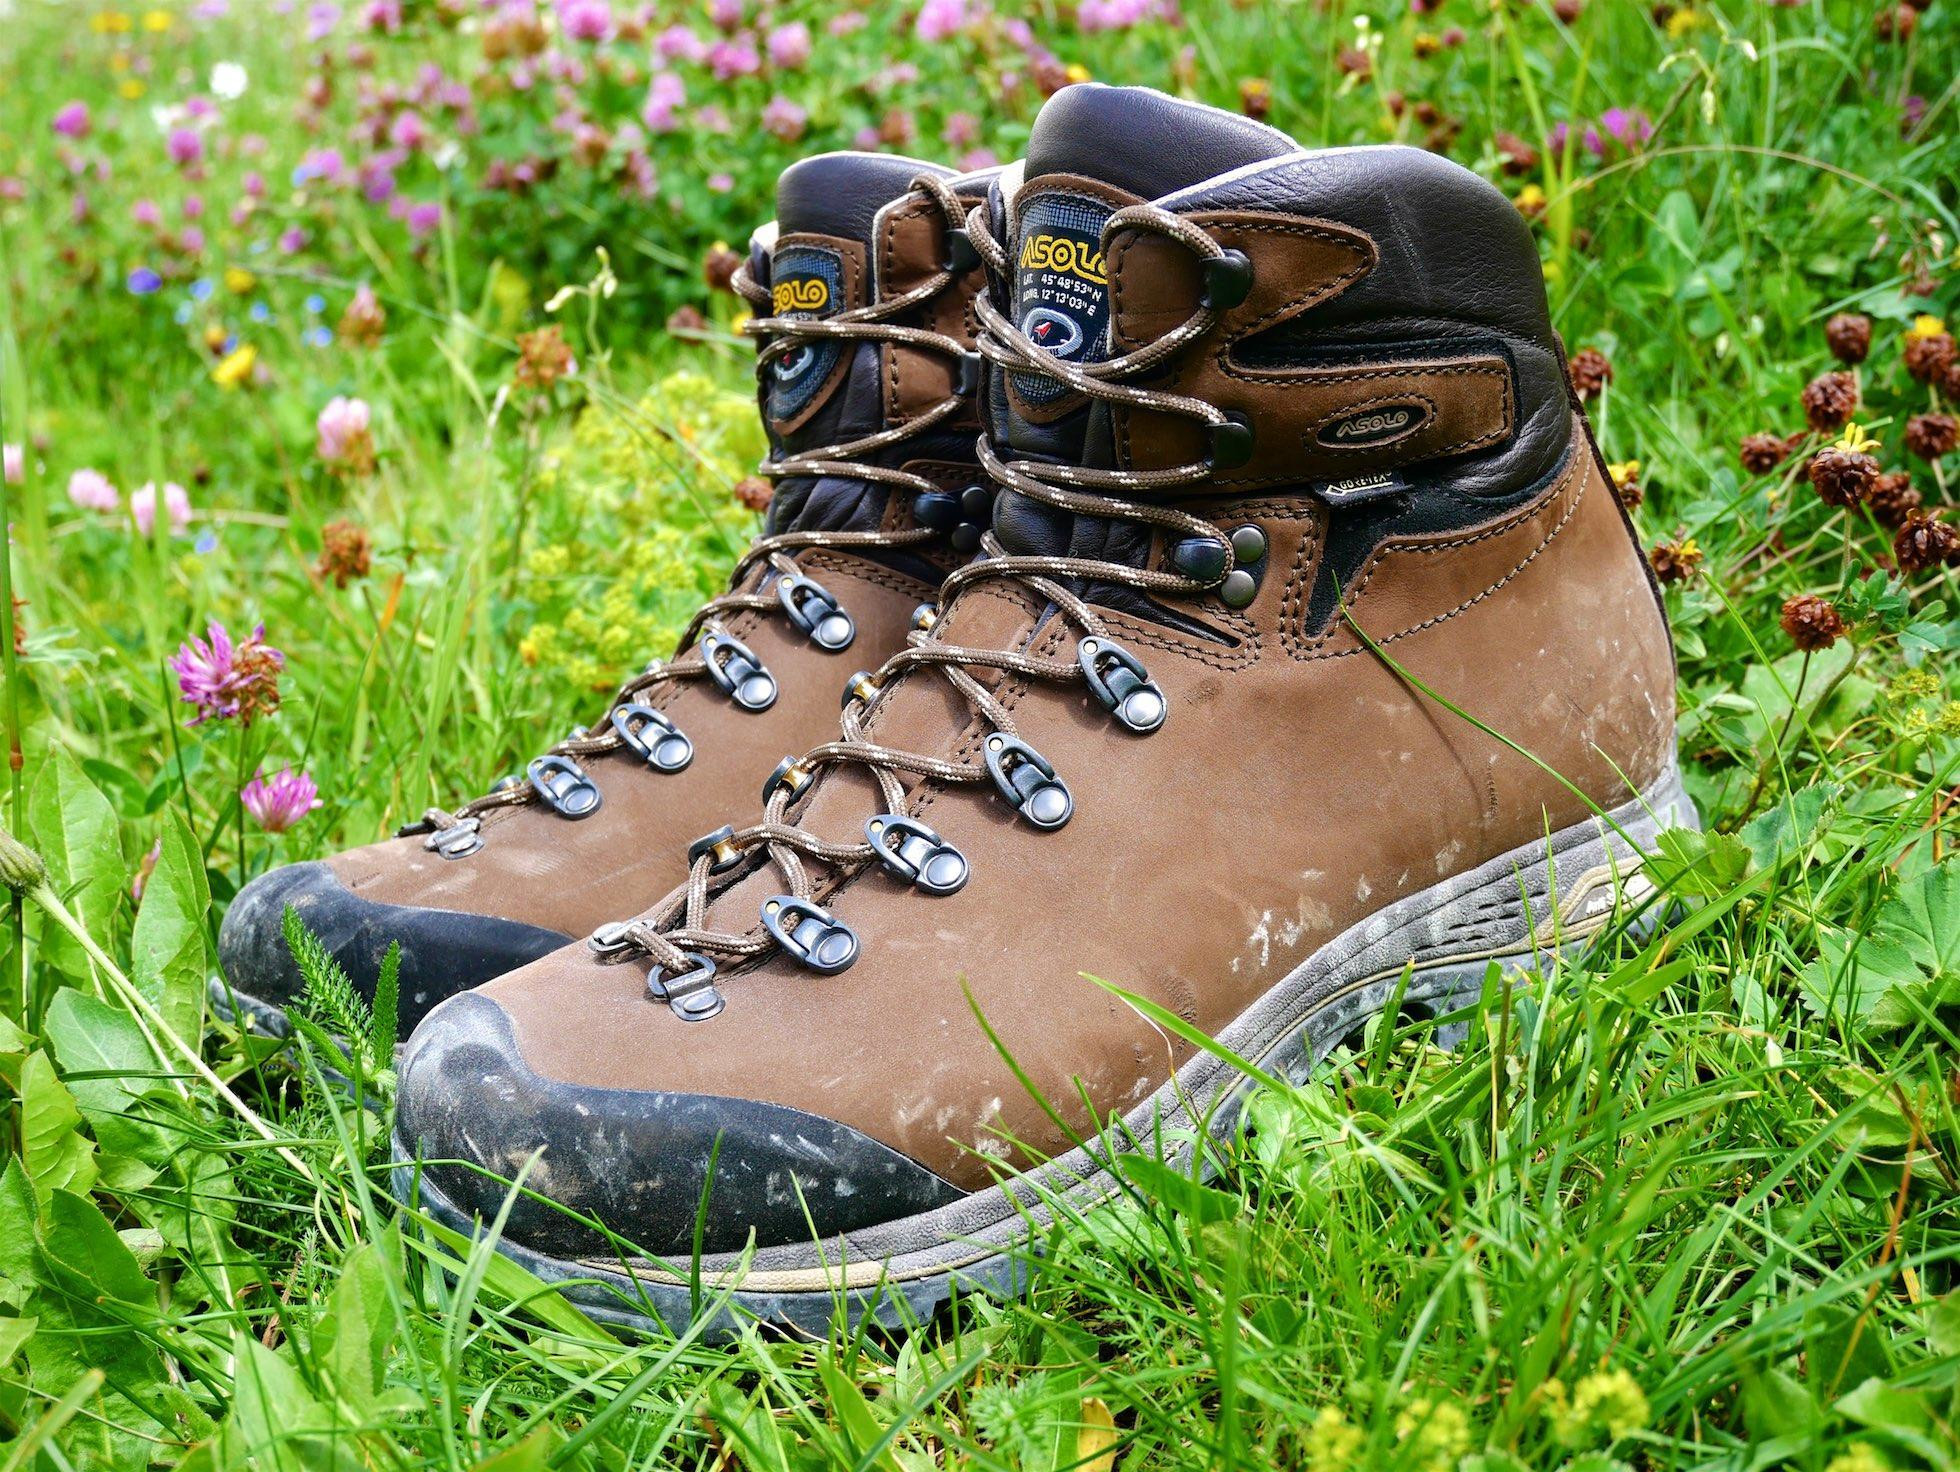 Asolo Fandango DUO GV – odporúčame, pokiaľ chcete len jedny topánky a chodíte najmä do lesov a na hole